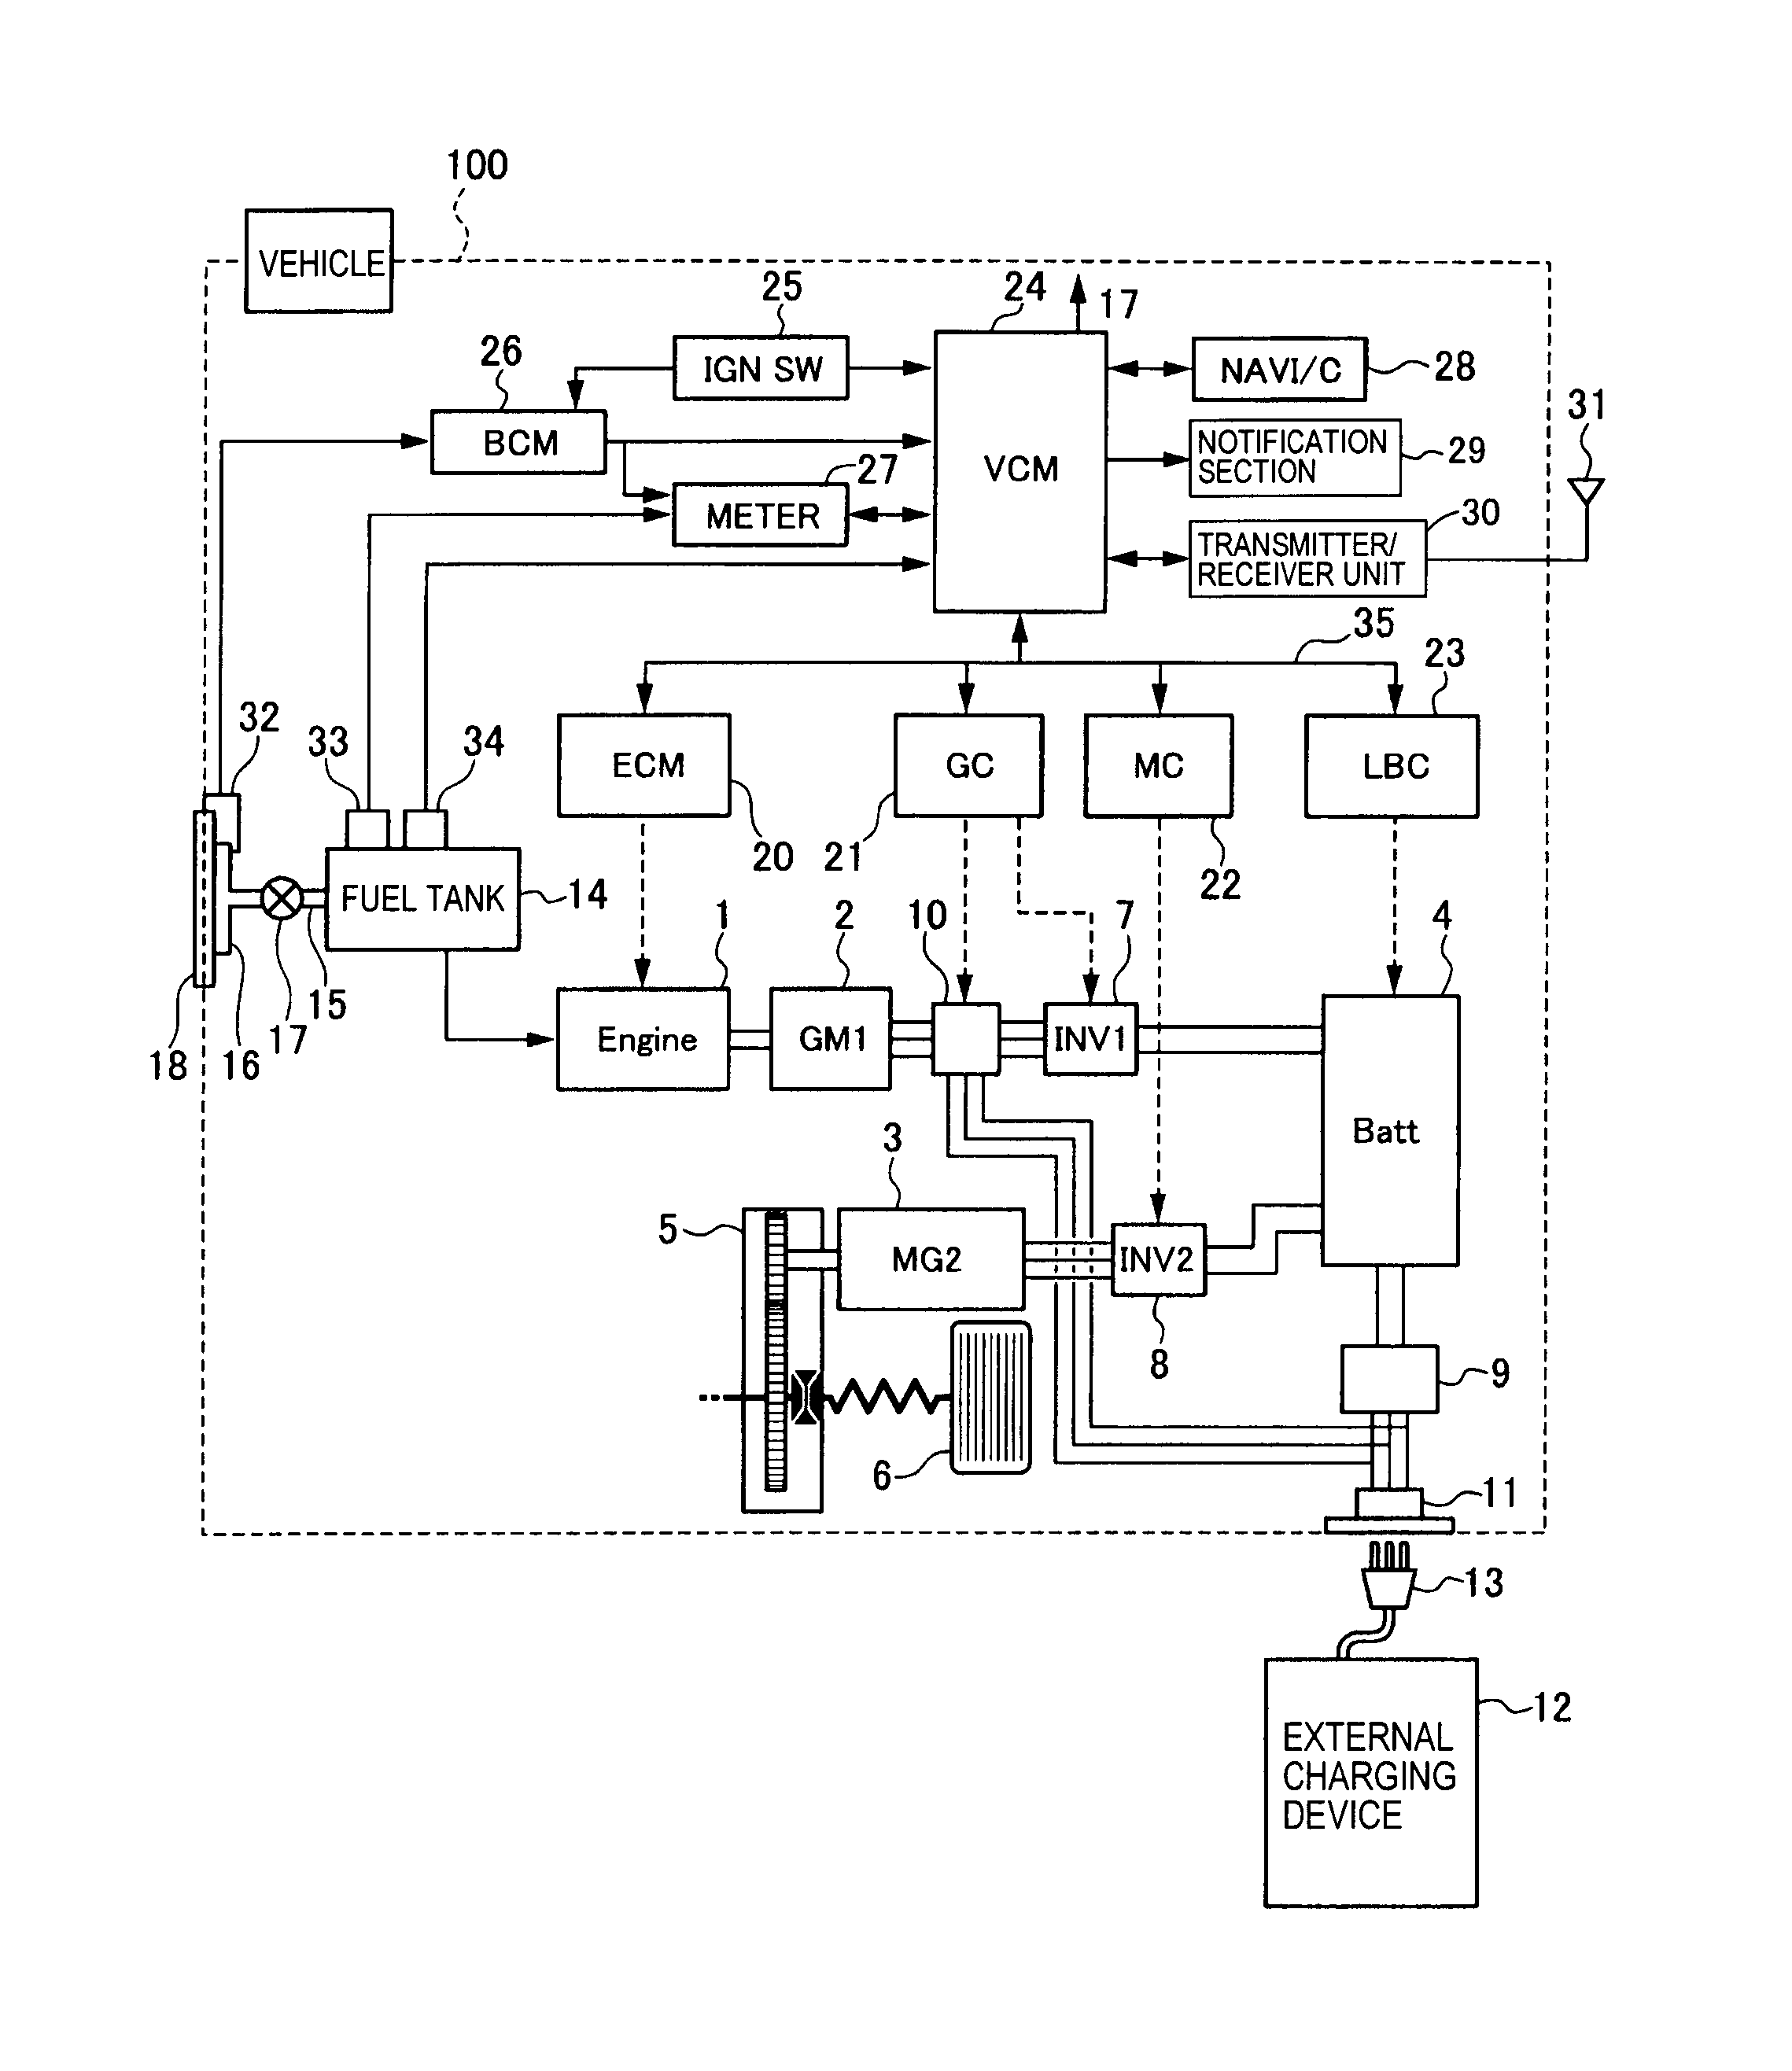 wiring diagram for q-flex accelerometer